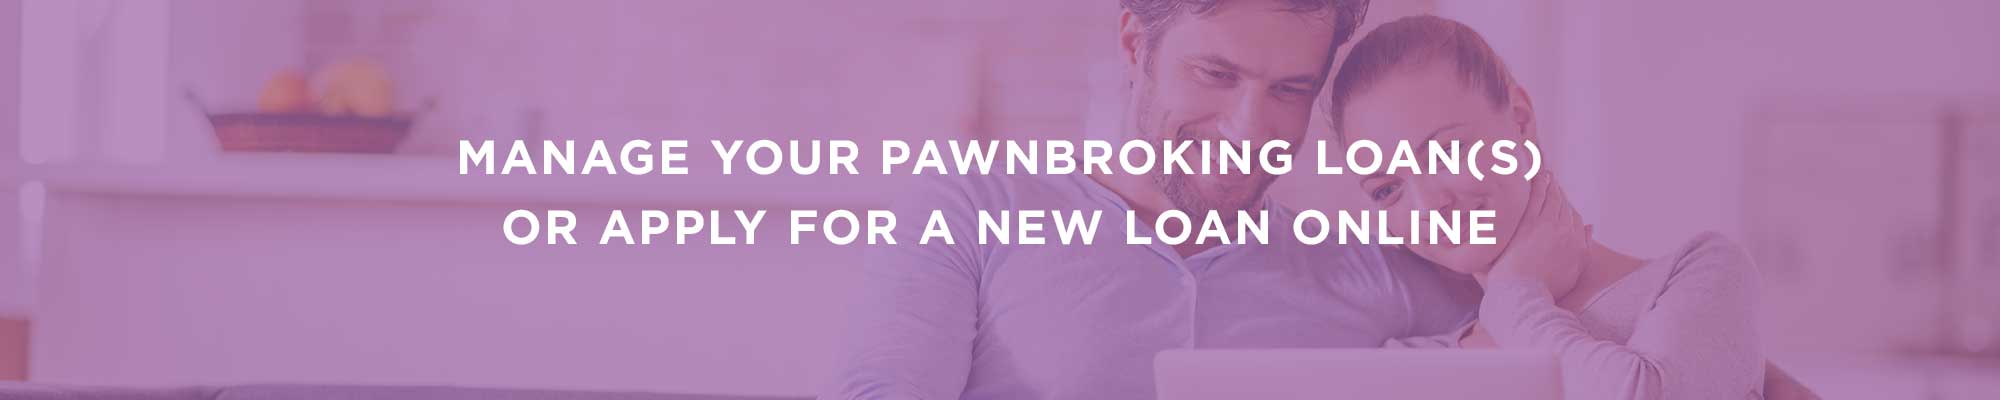 Pawnbroking Loans